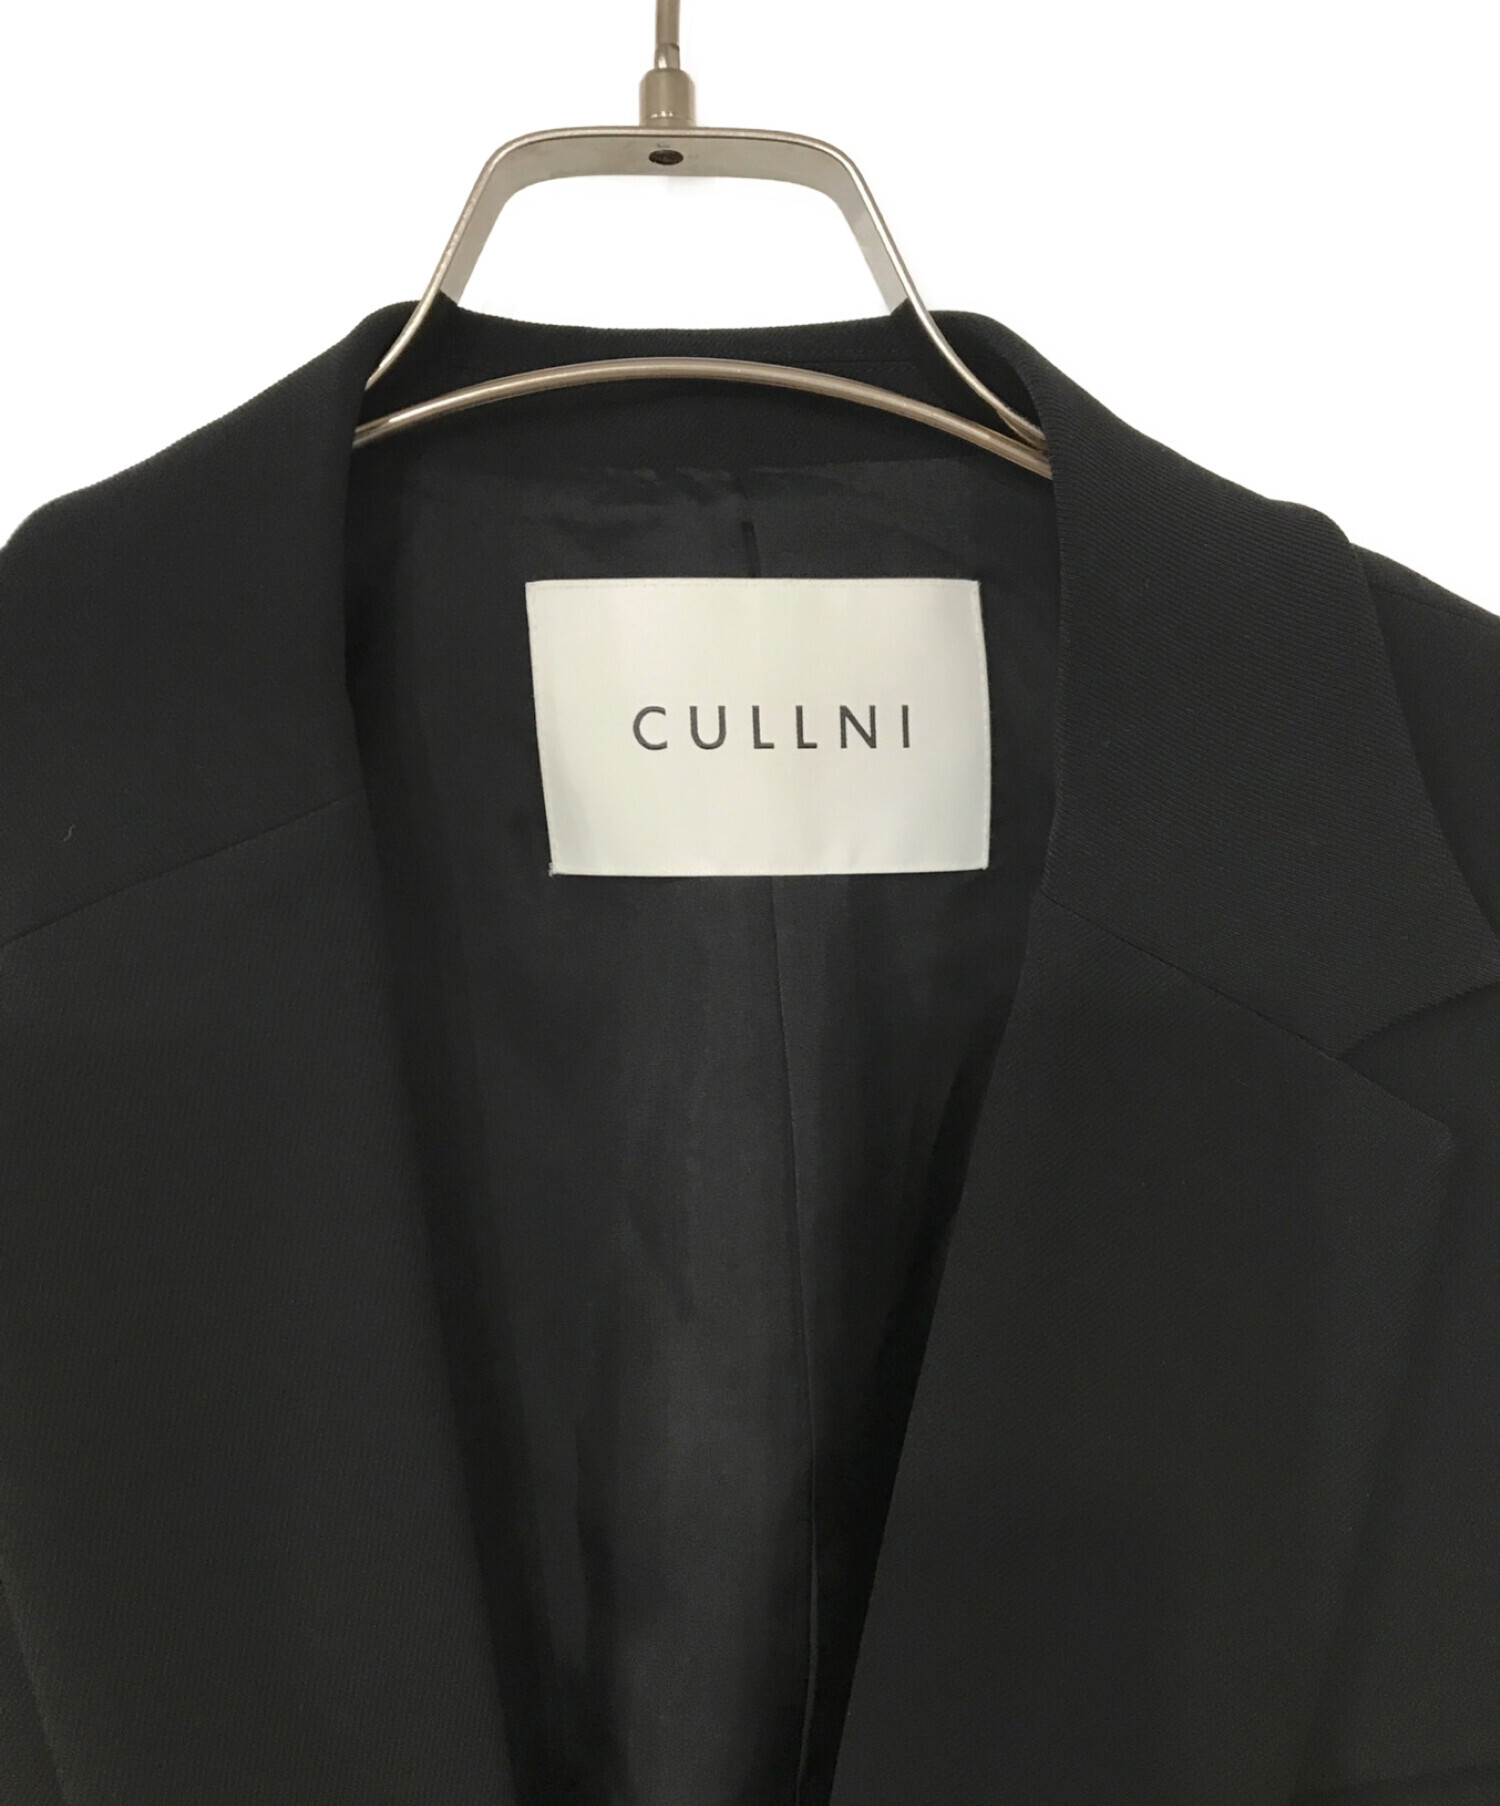 CULLNI (クルニ) テーラードジャケット ブラック サイズ:表記無し